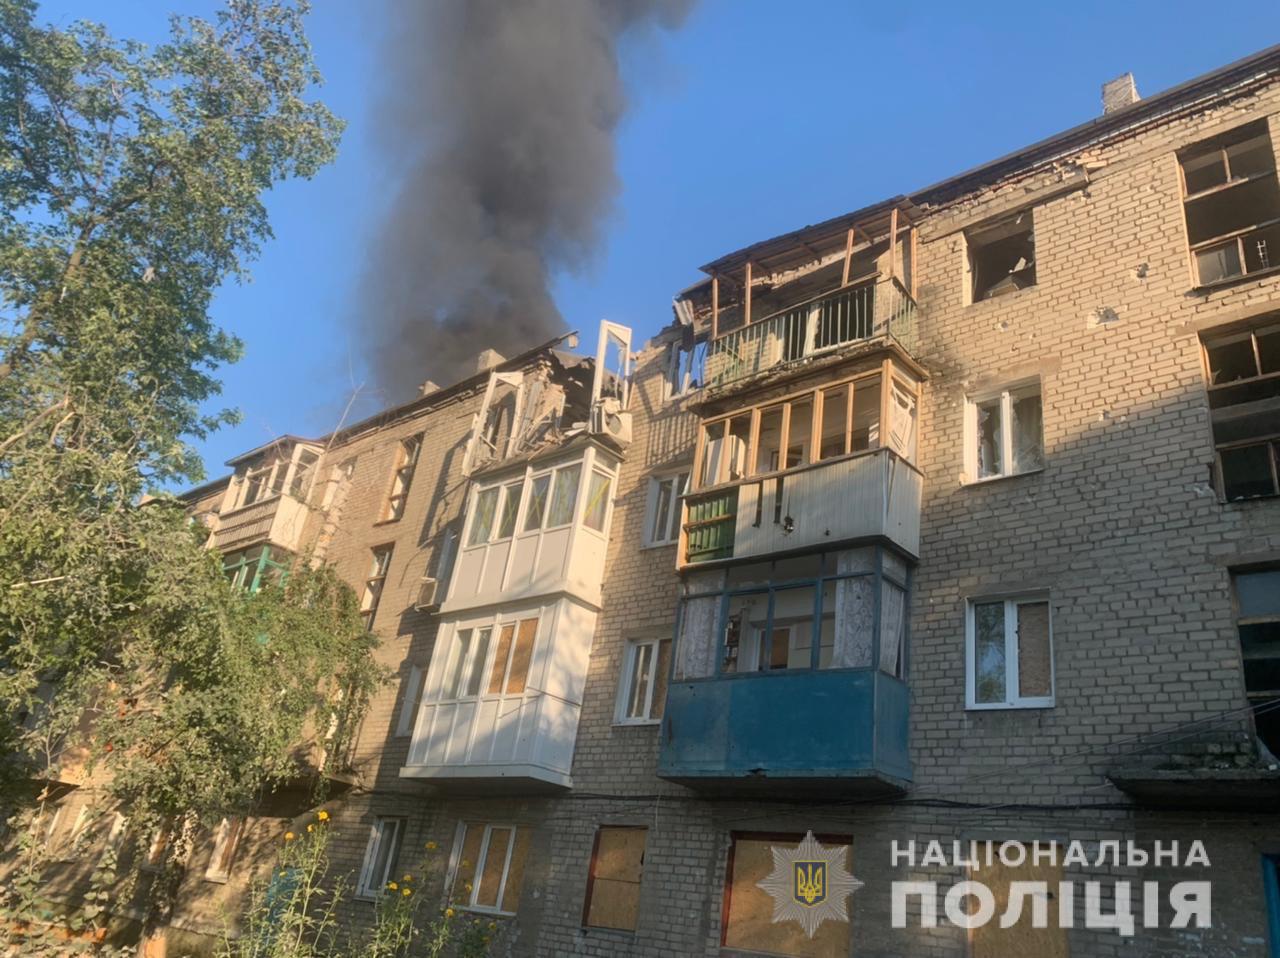 15 июля от обстрелов россиян погибли 7 жителей Донетчины. Разрушены более 50 гражданских объектов 1